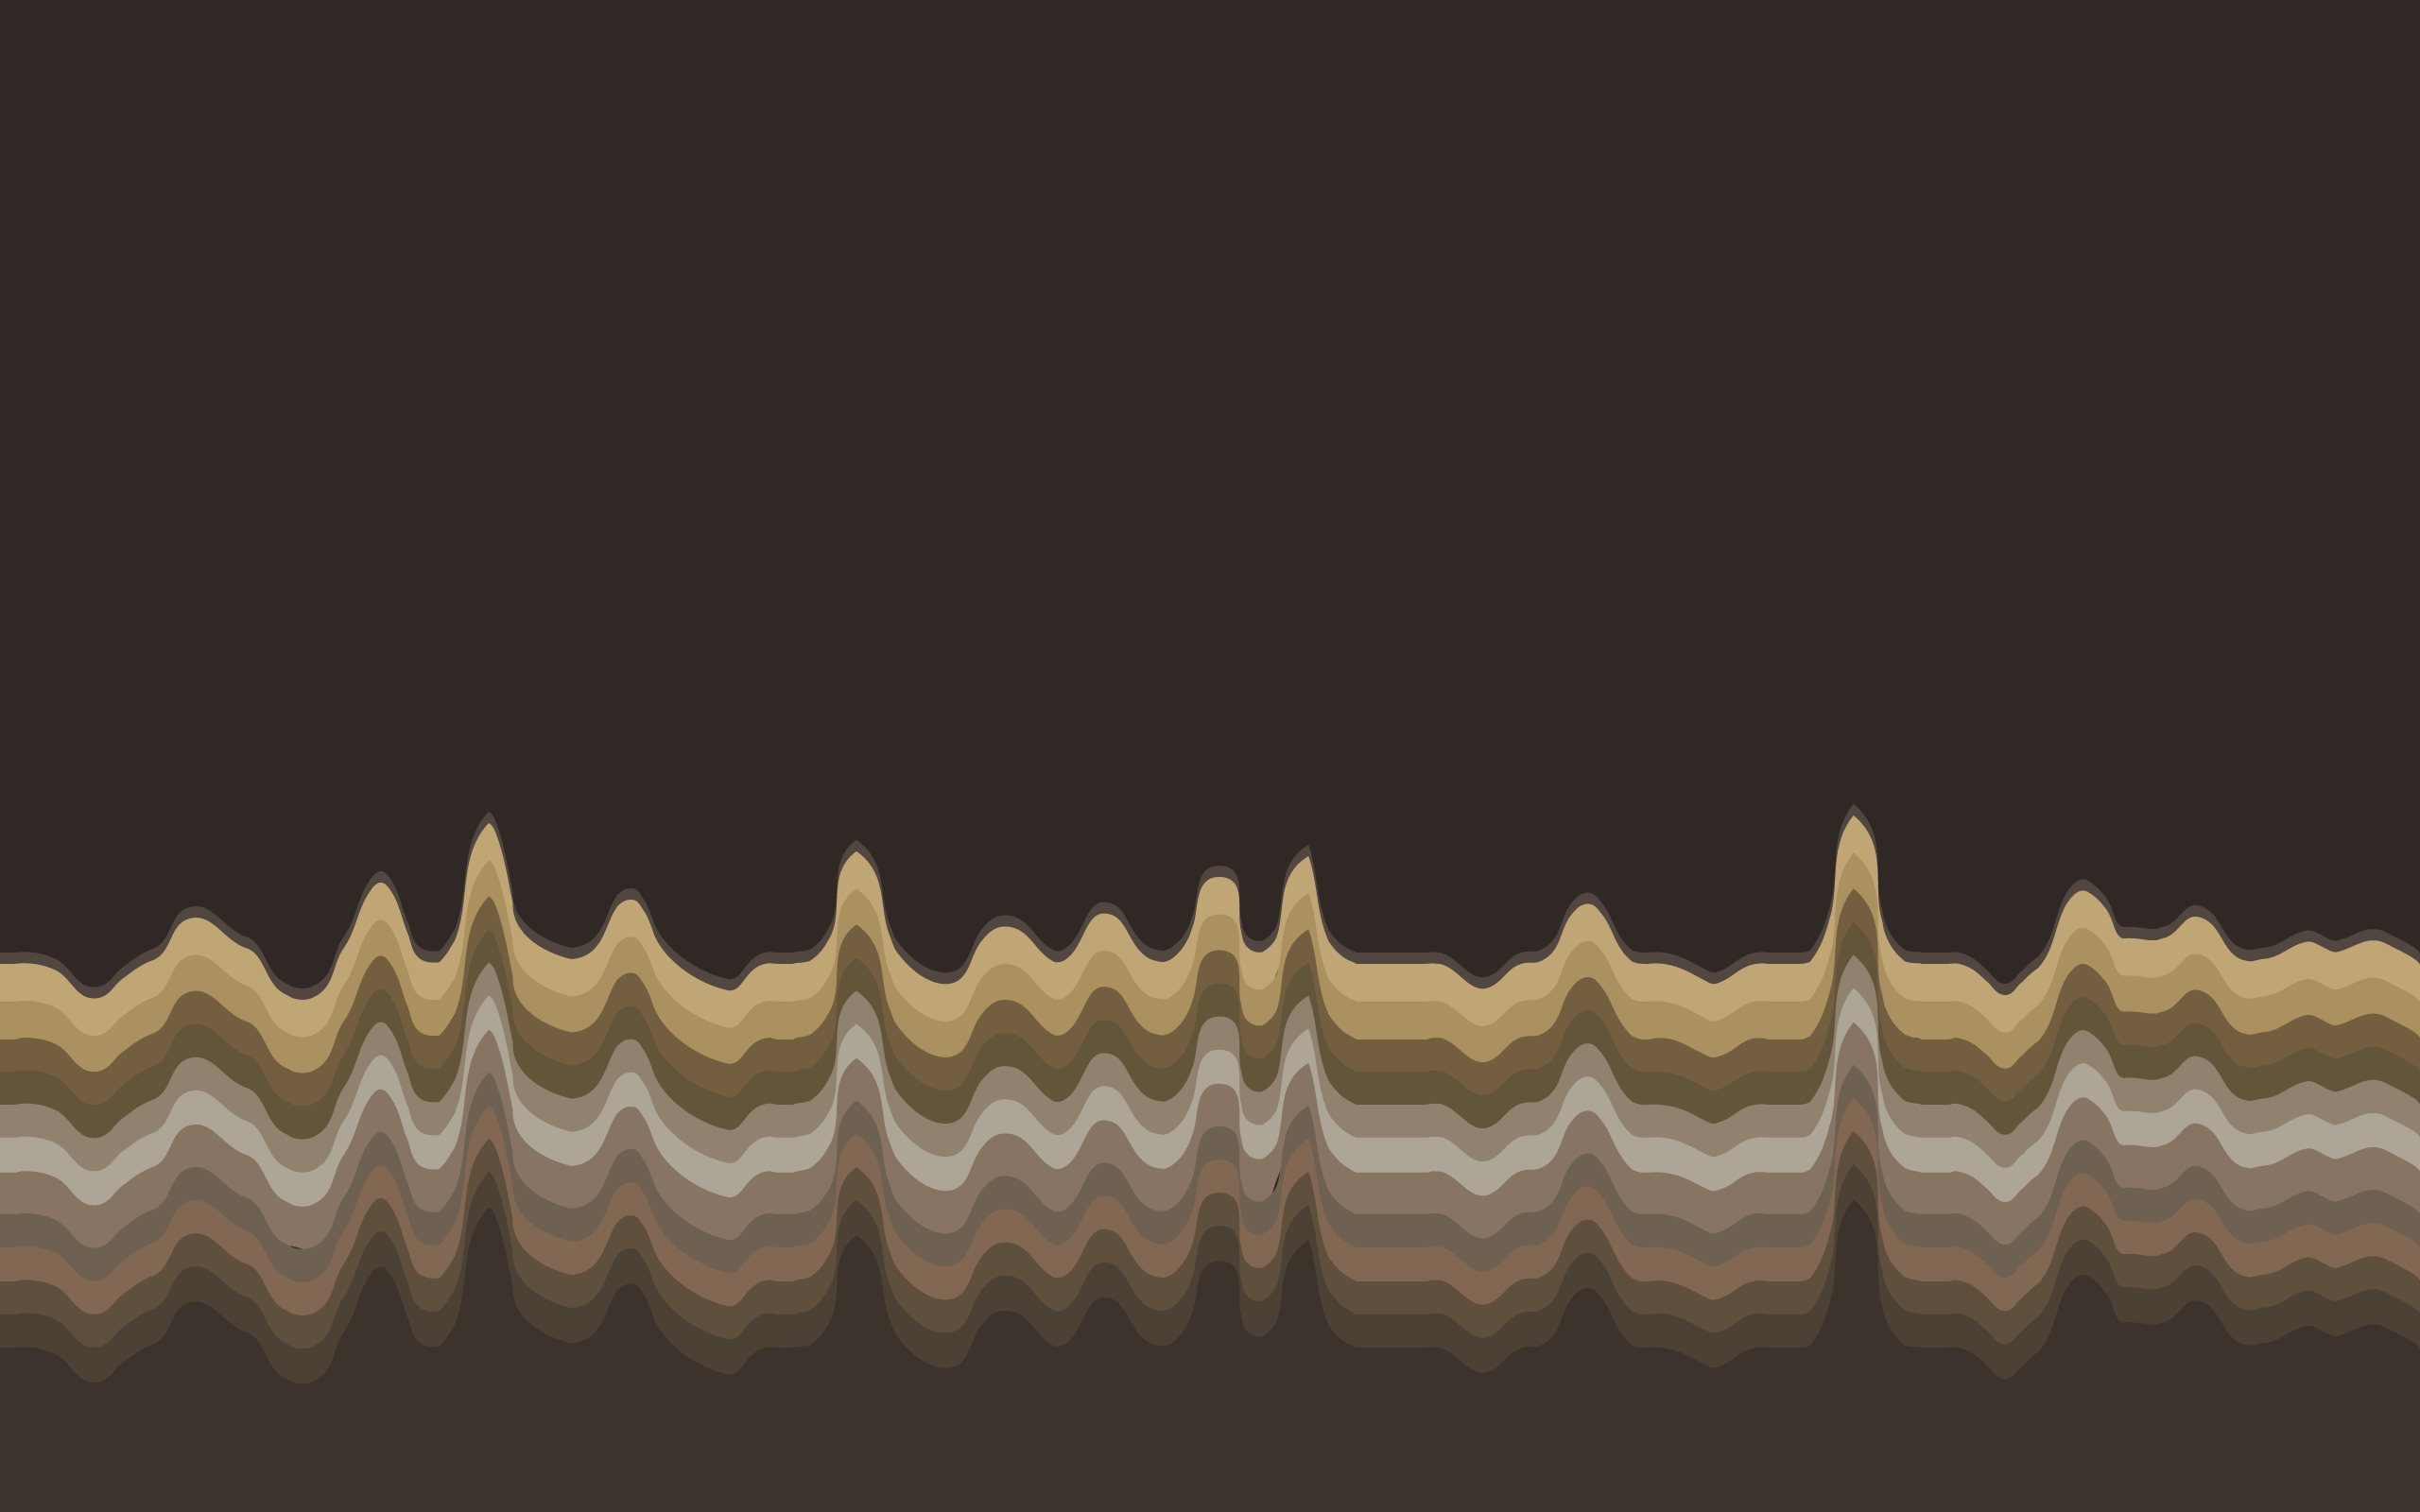 General 2560x1600 minimalism waveforms brown